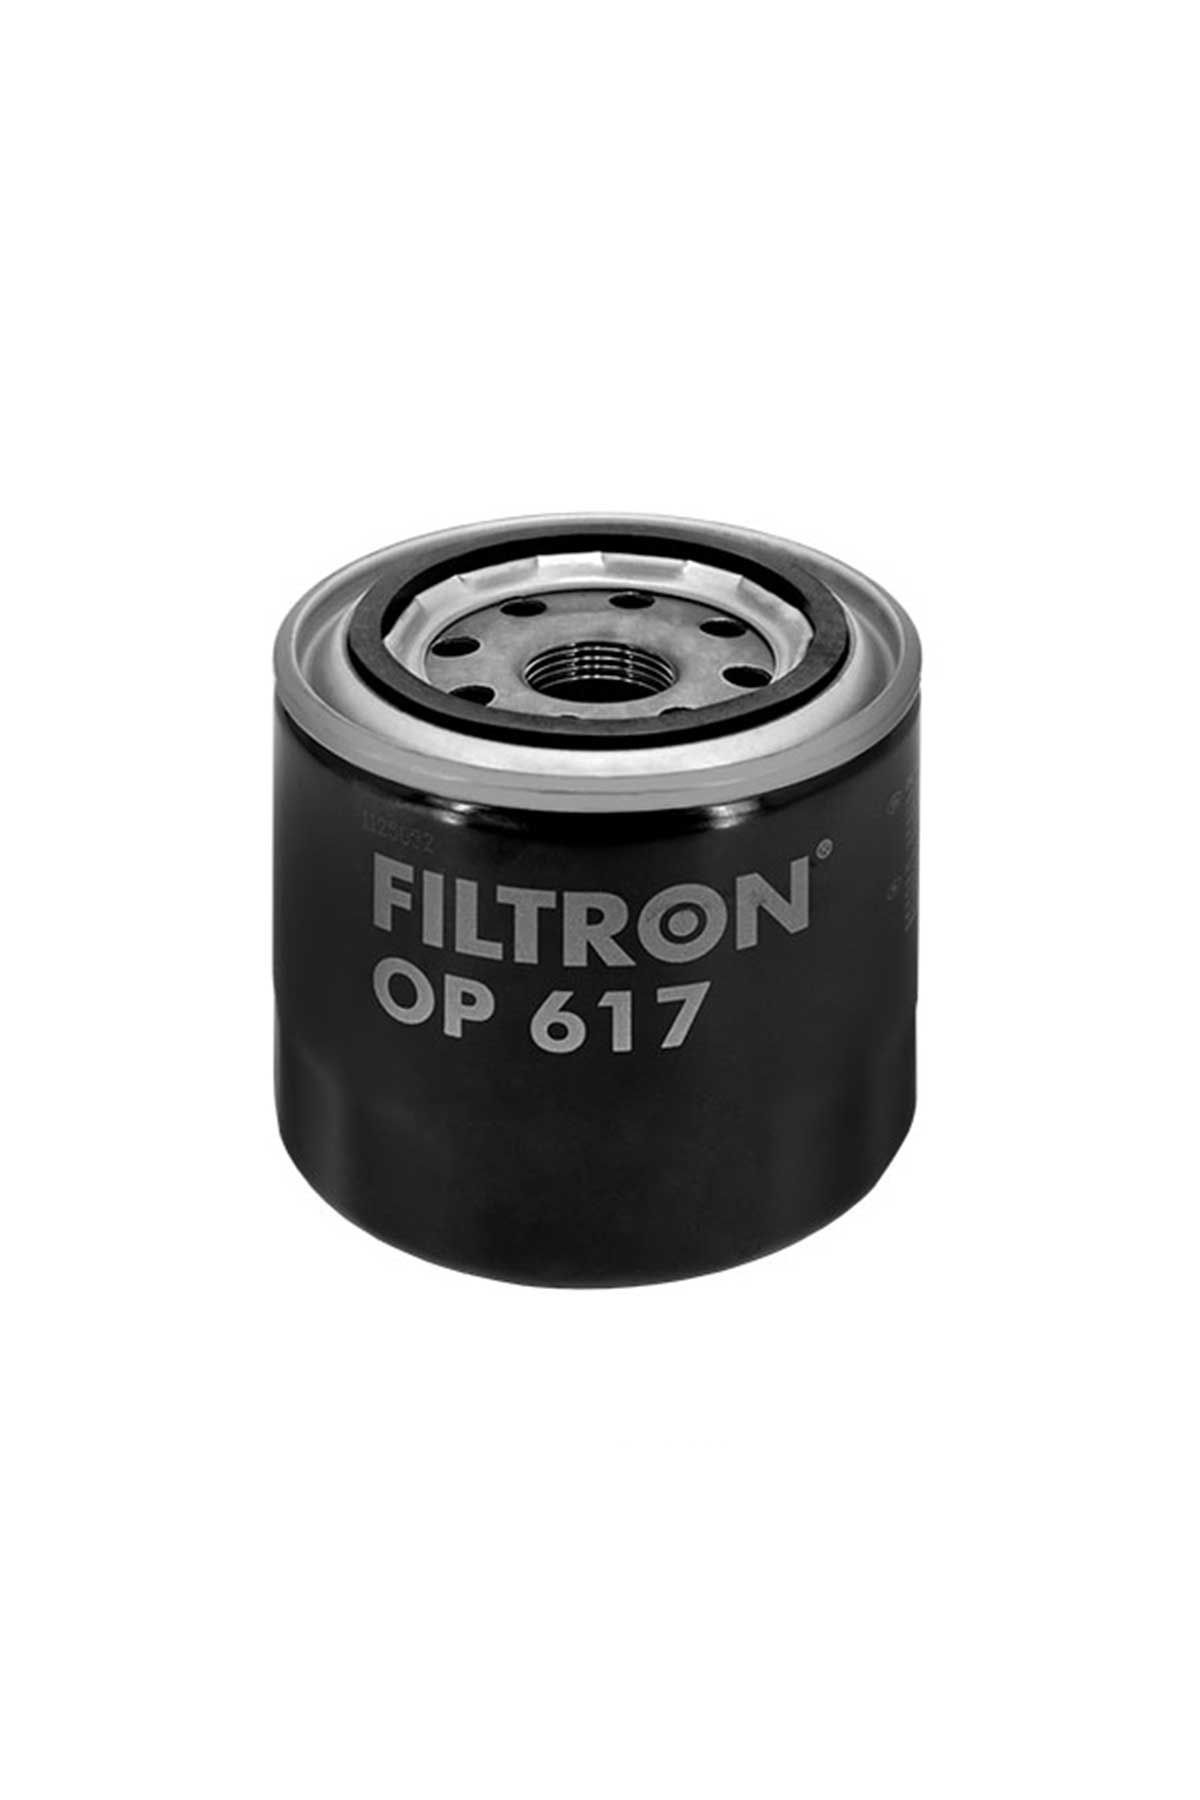 Kia Cerato 1.6 Benzinli Yağ Filtresi 2016-2018 Filtron